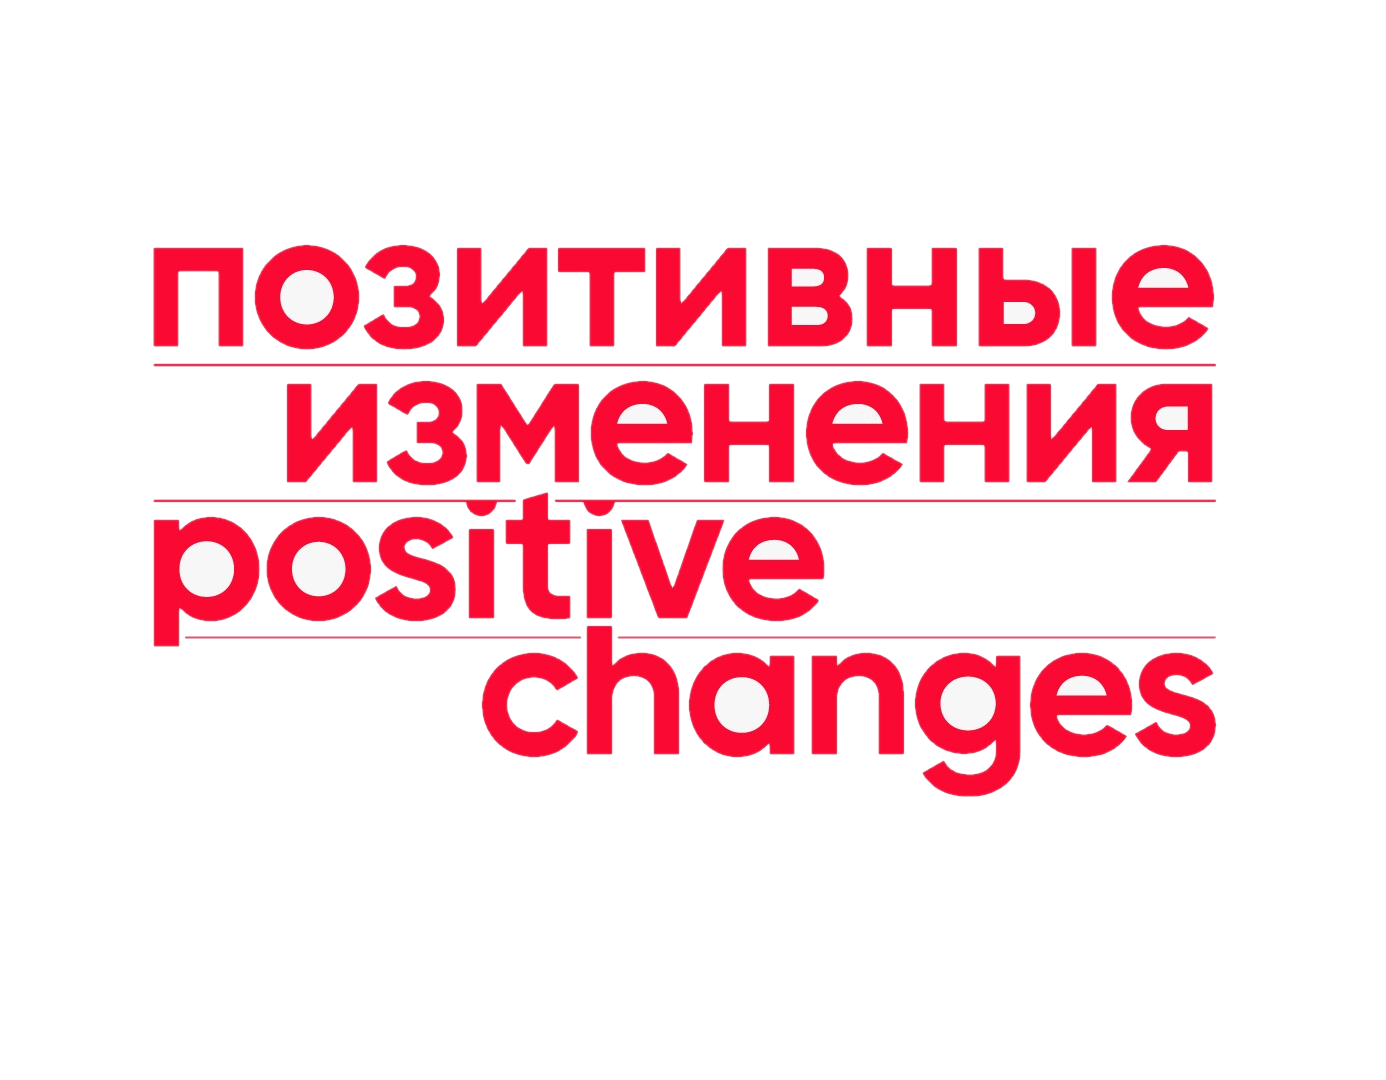 ООО «Фабрика позитивных изменений»